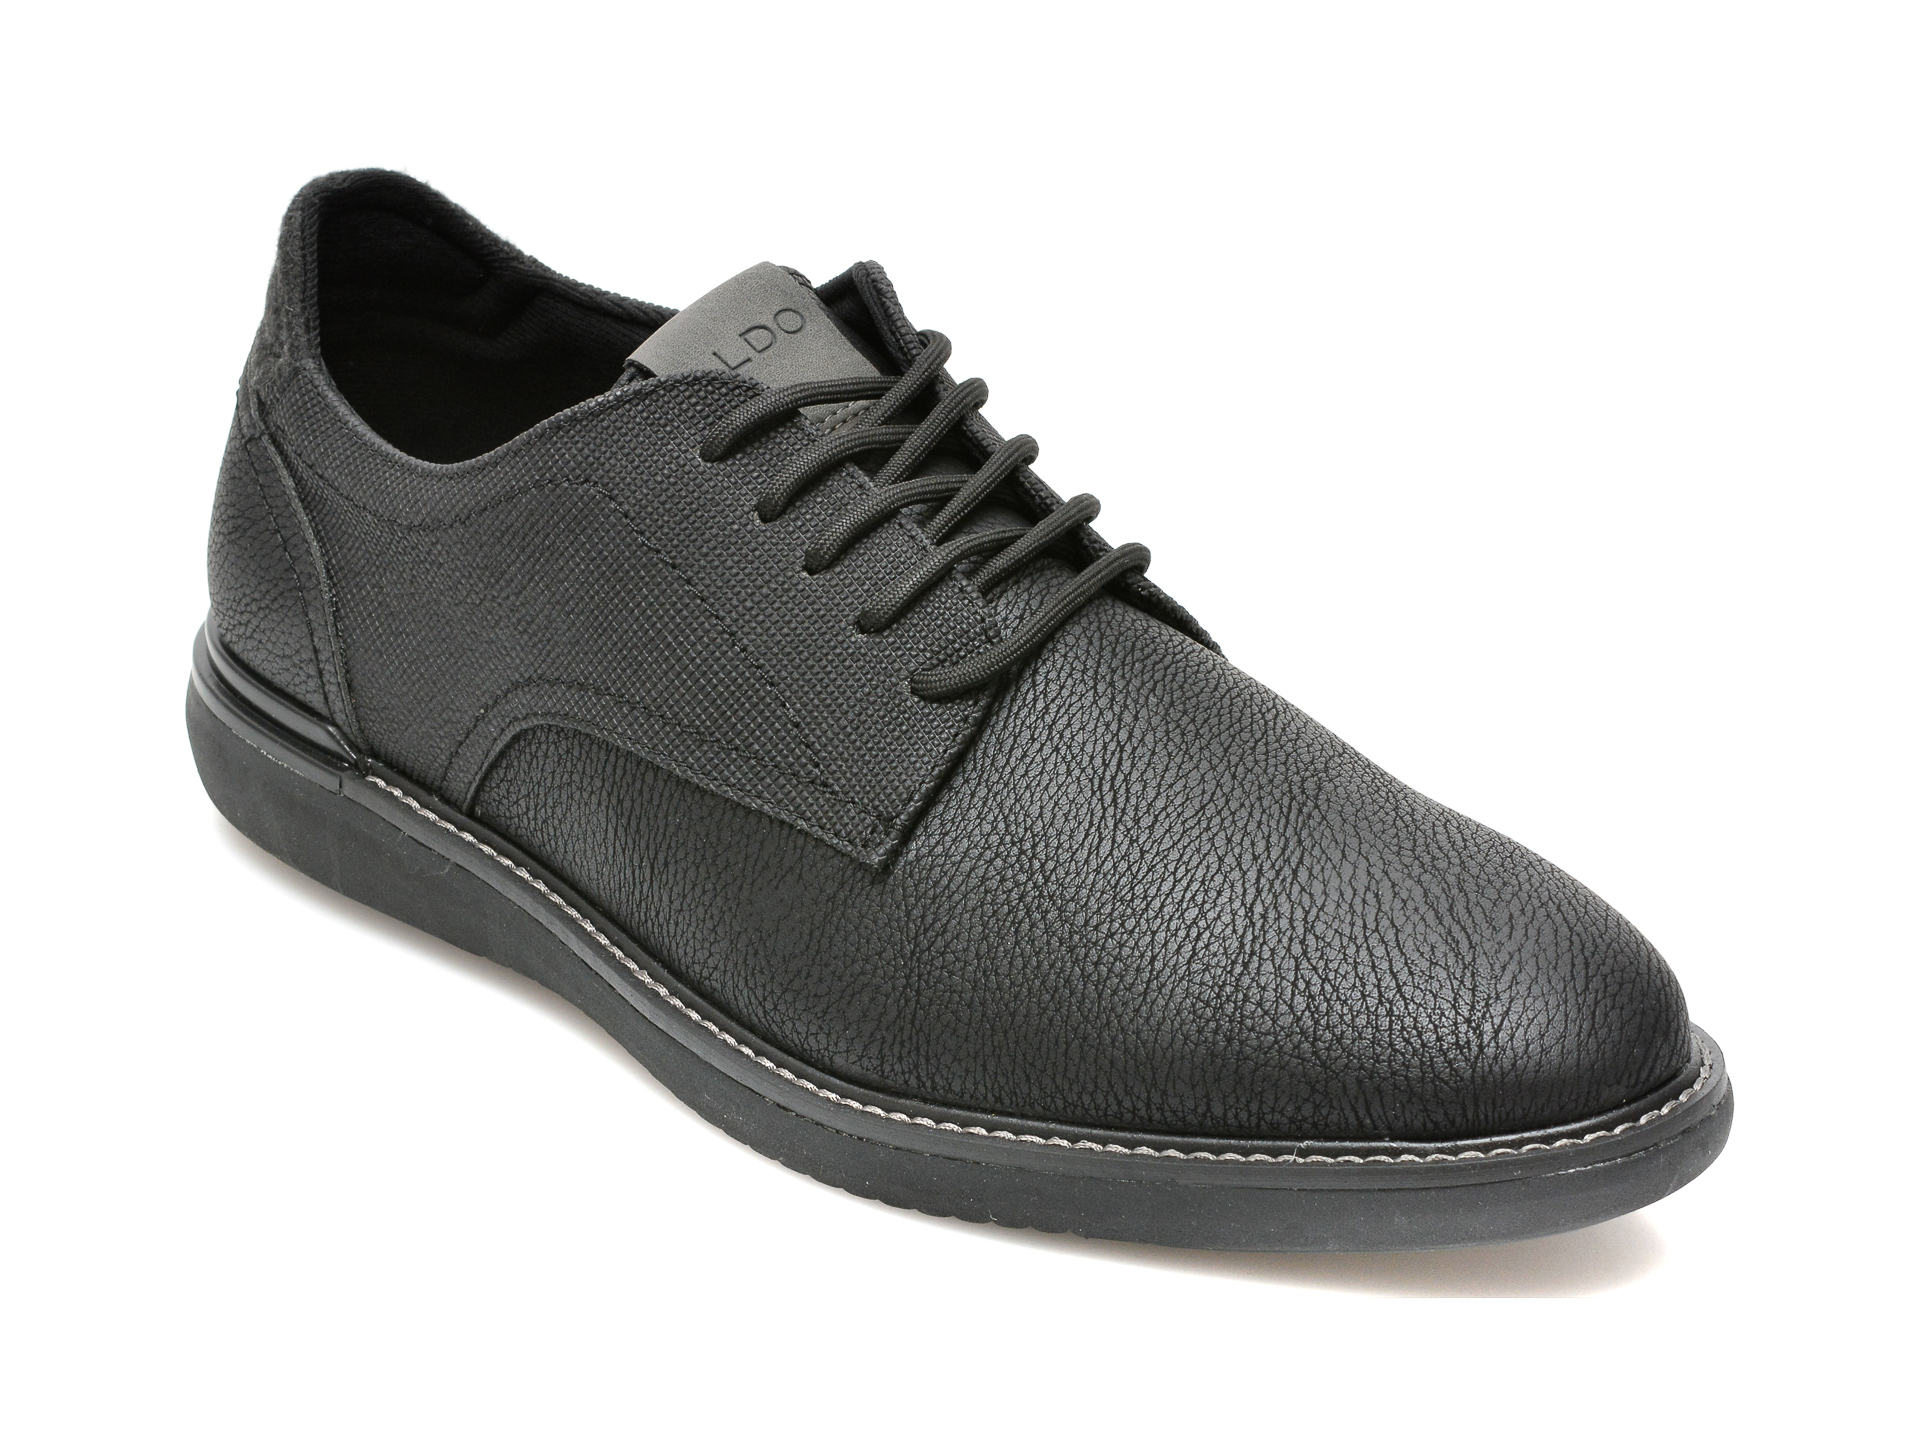 Pantofi ALDO negri, RAKERS001, din piele ecologica Aldo imagine reduceri